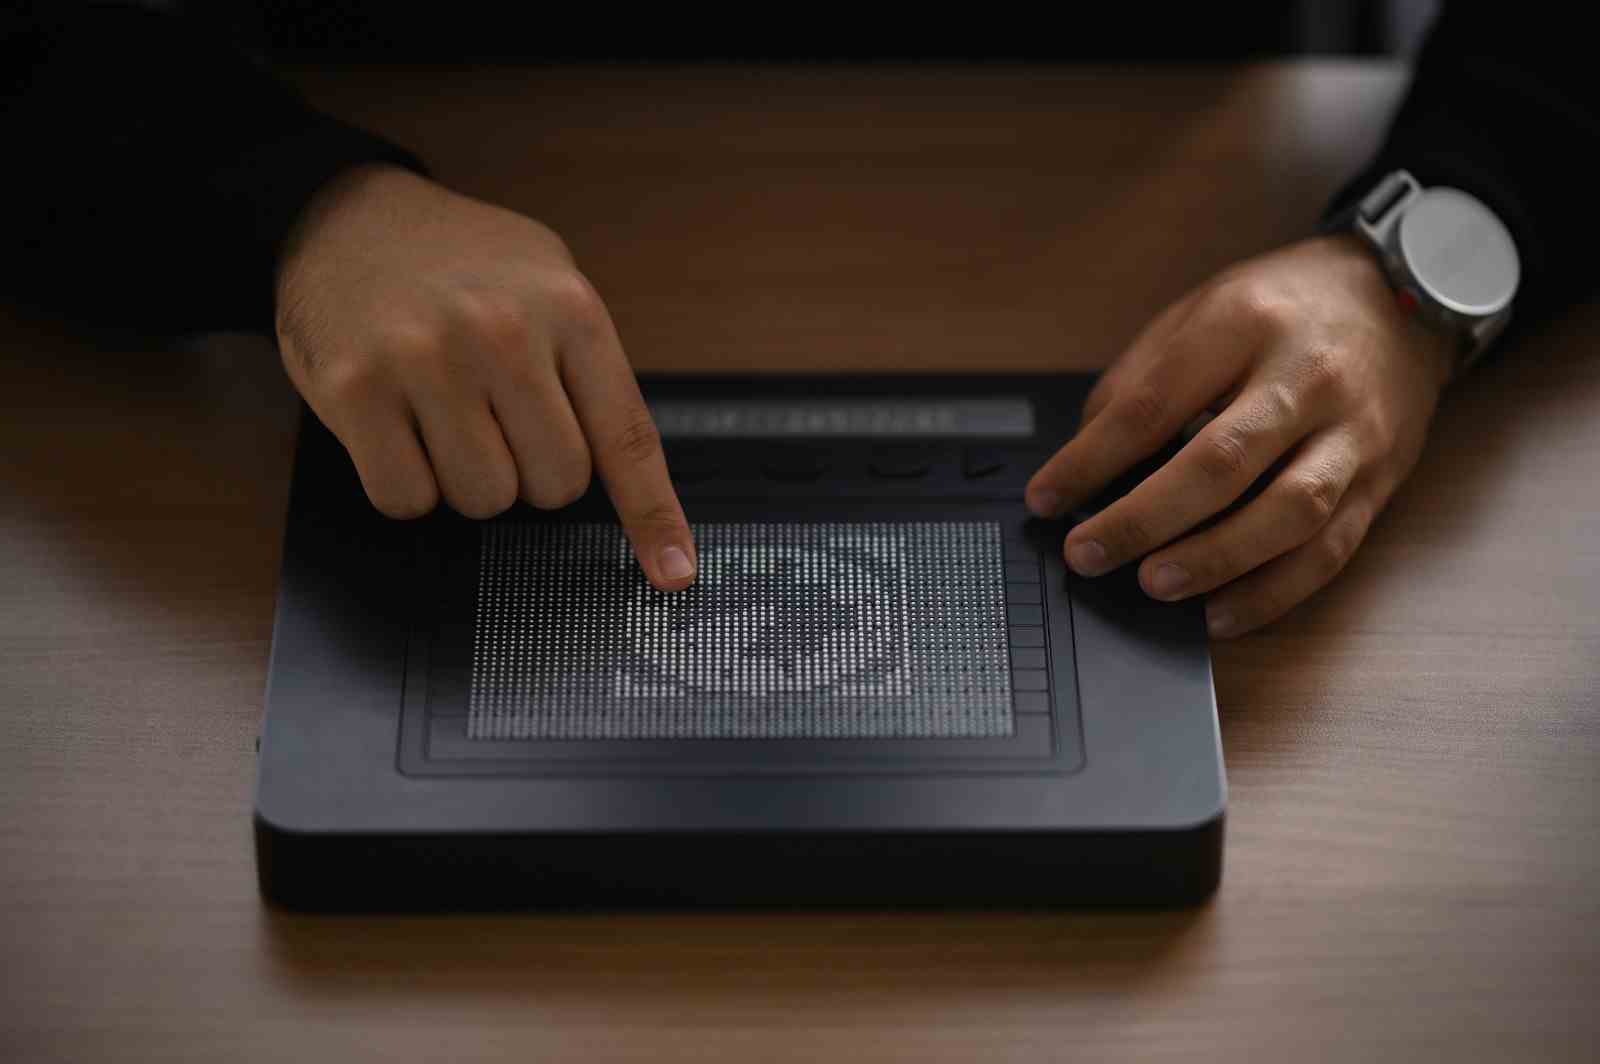 Die Hände einer Person berühren ein Bild eines Globus, der in Stecknadeln auf einem Dotpad angezeigt wird.